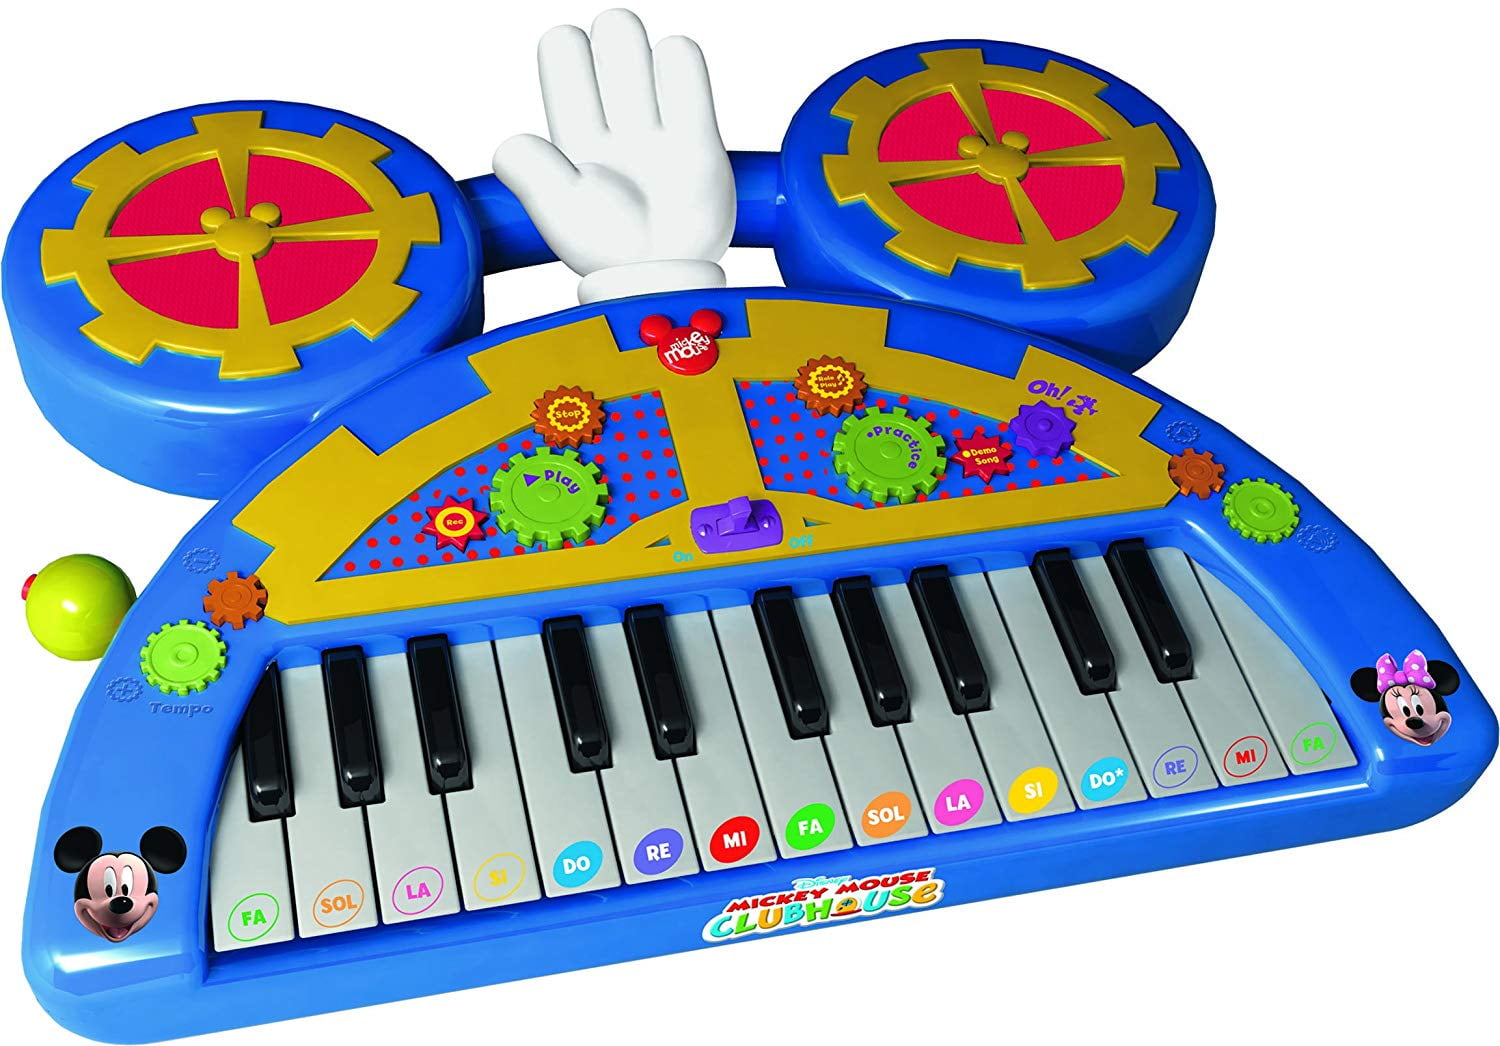 Игра музыкальная игрушка. Пианино Микки Маус игрушка. Музыкальная игрушка пианино Микки Маус. IMC Toys синтезатор. Музыкальный инструмент Kiddieland пианино с животными Минни Маус и друзья.